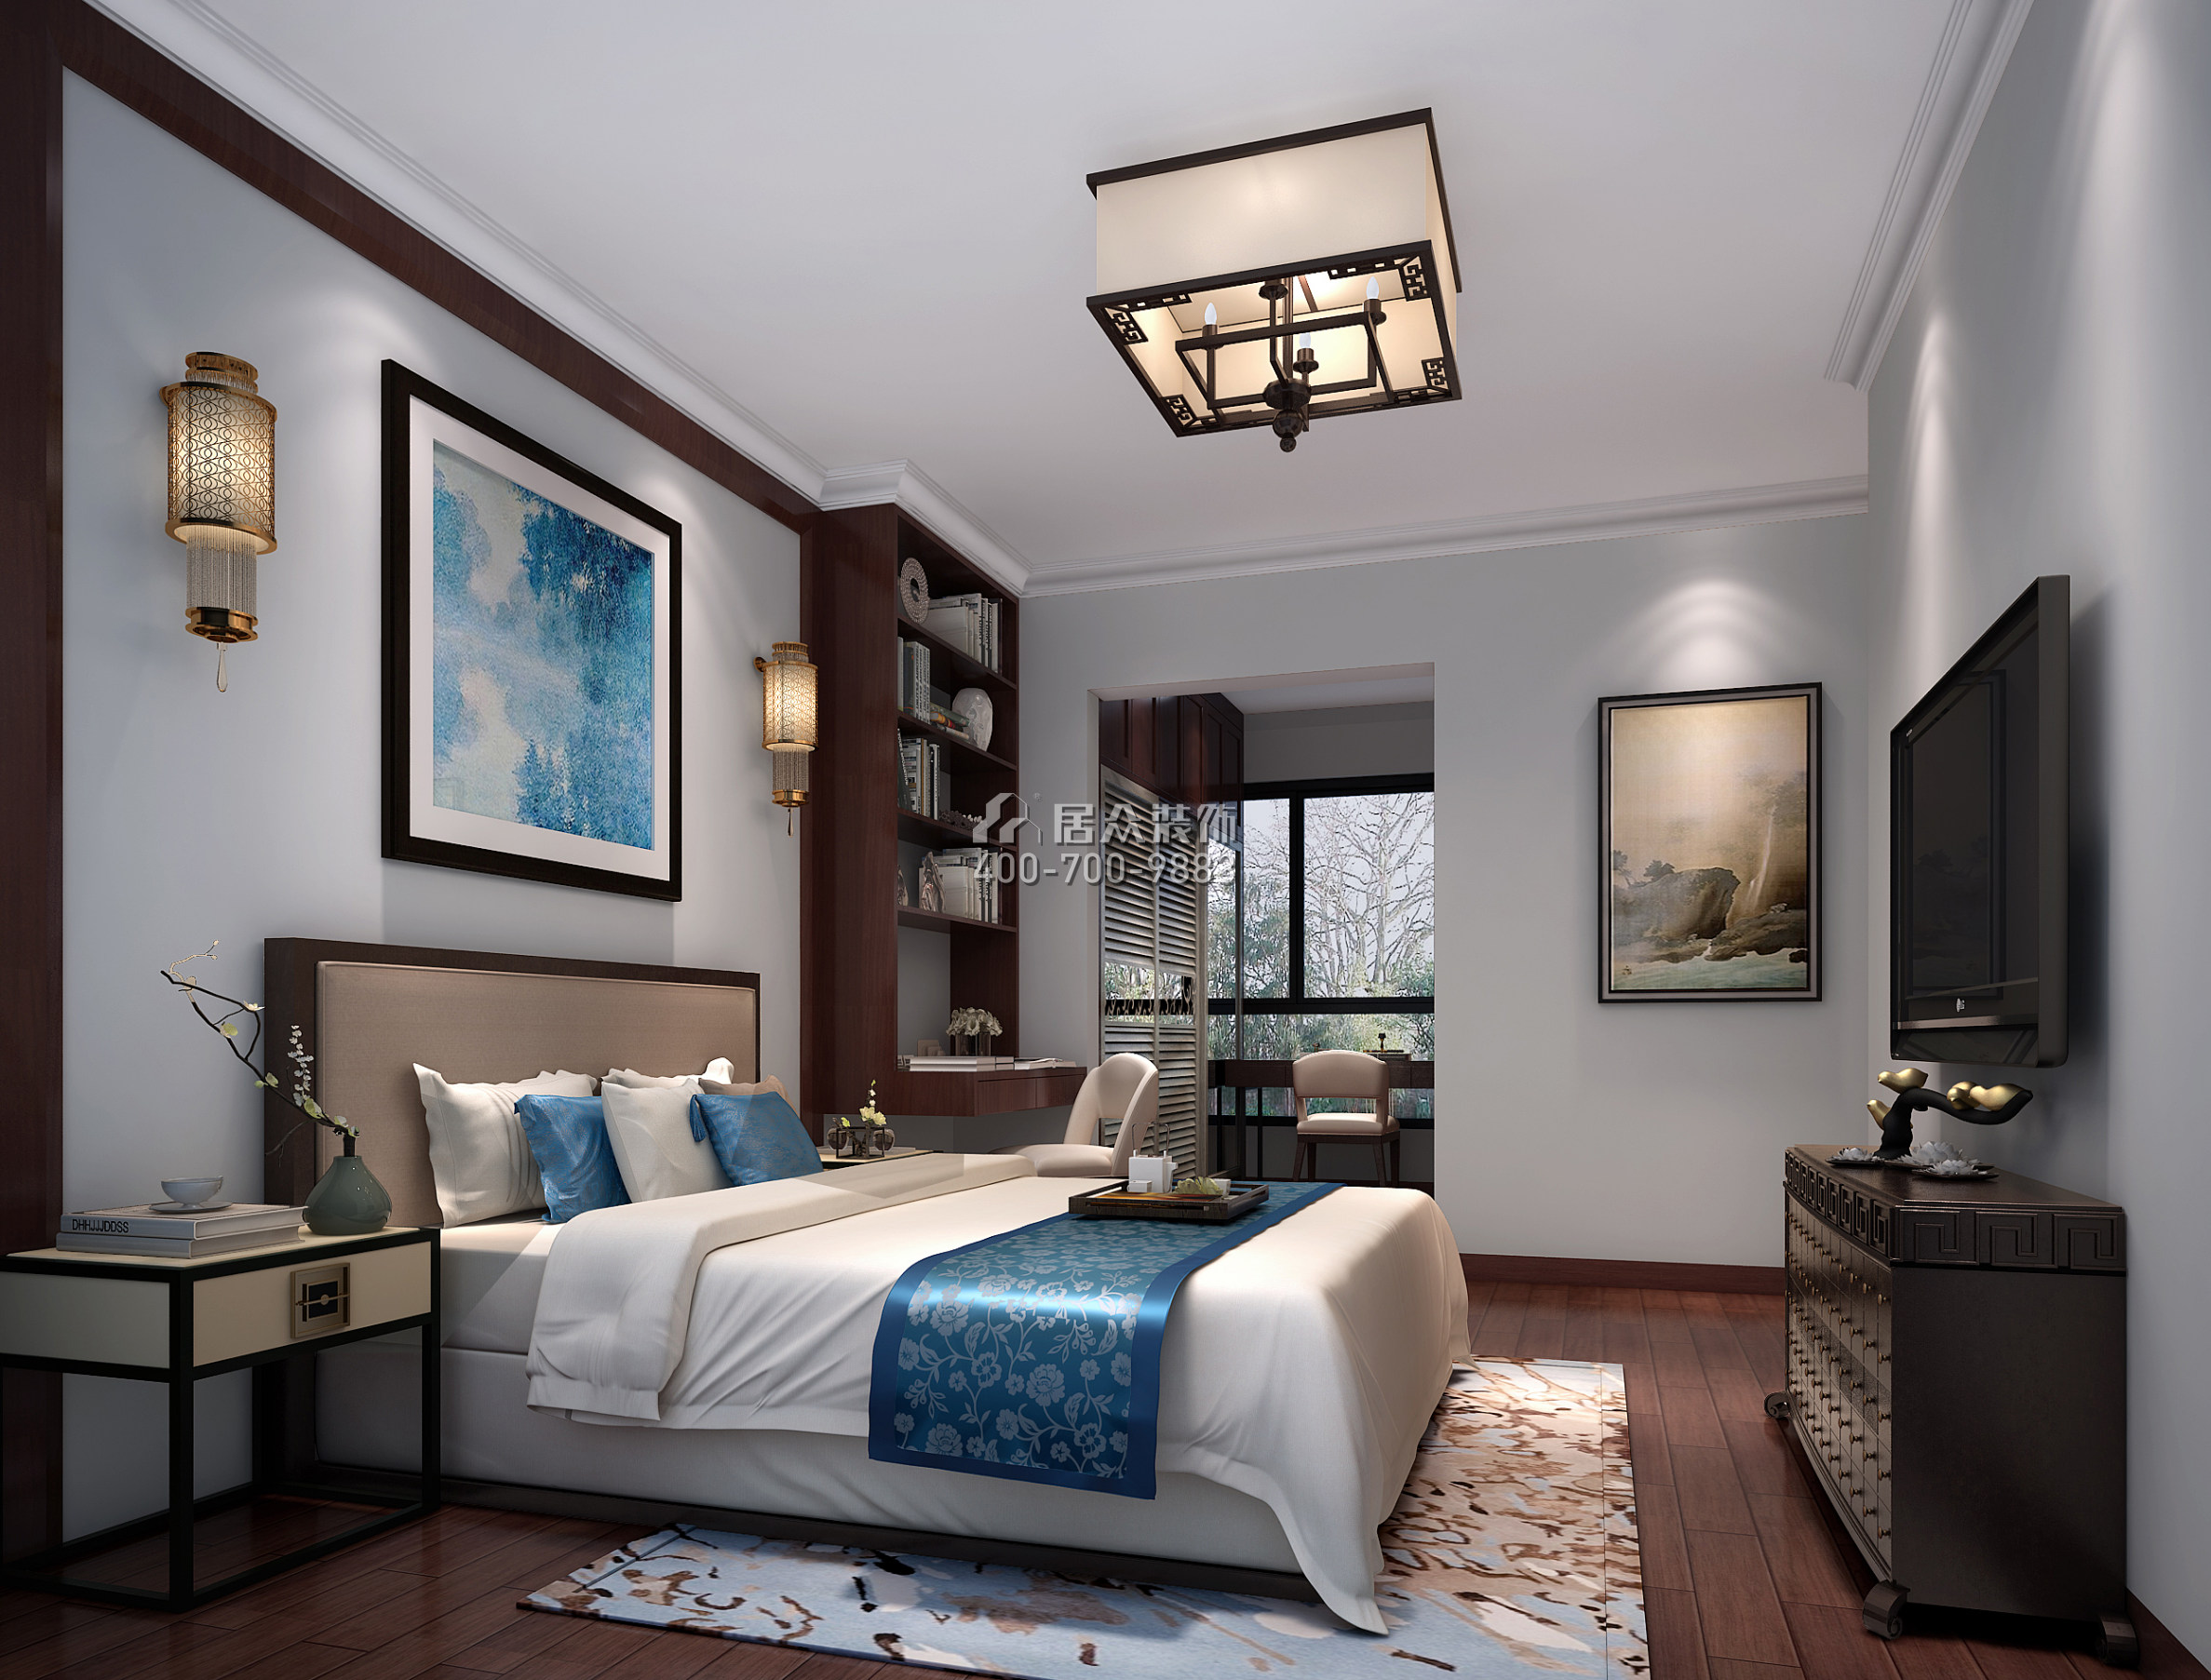 佳兆业前海广场120平方米中式风格平层户型卧室装修效果图